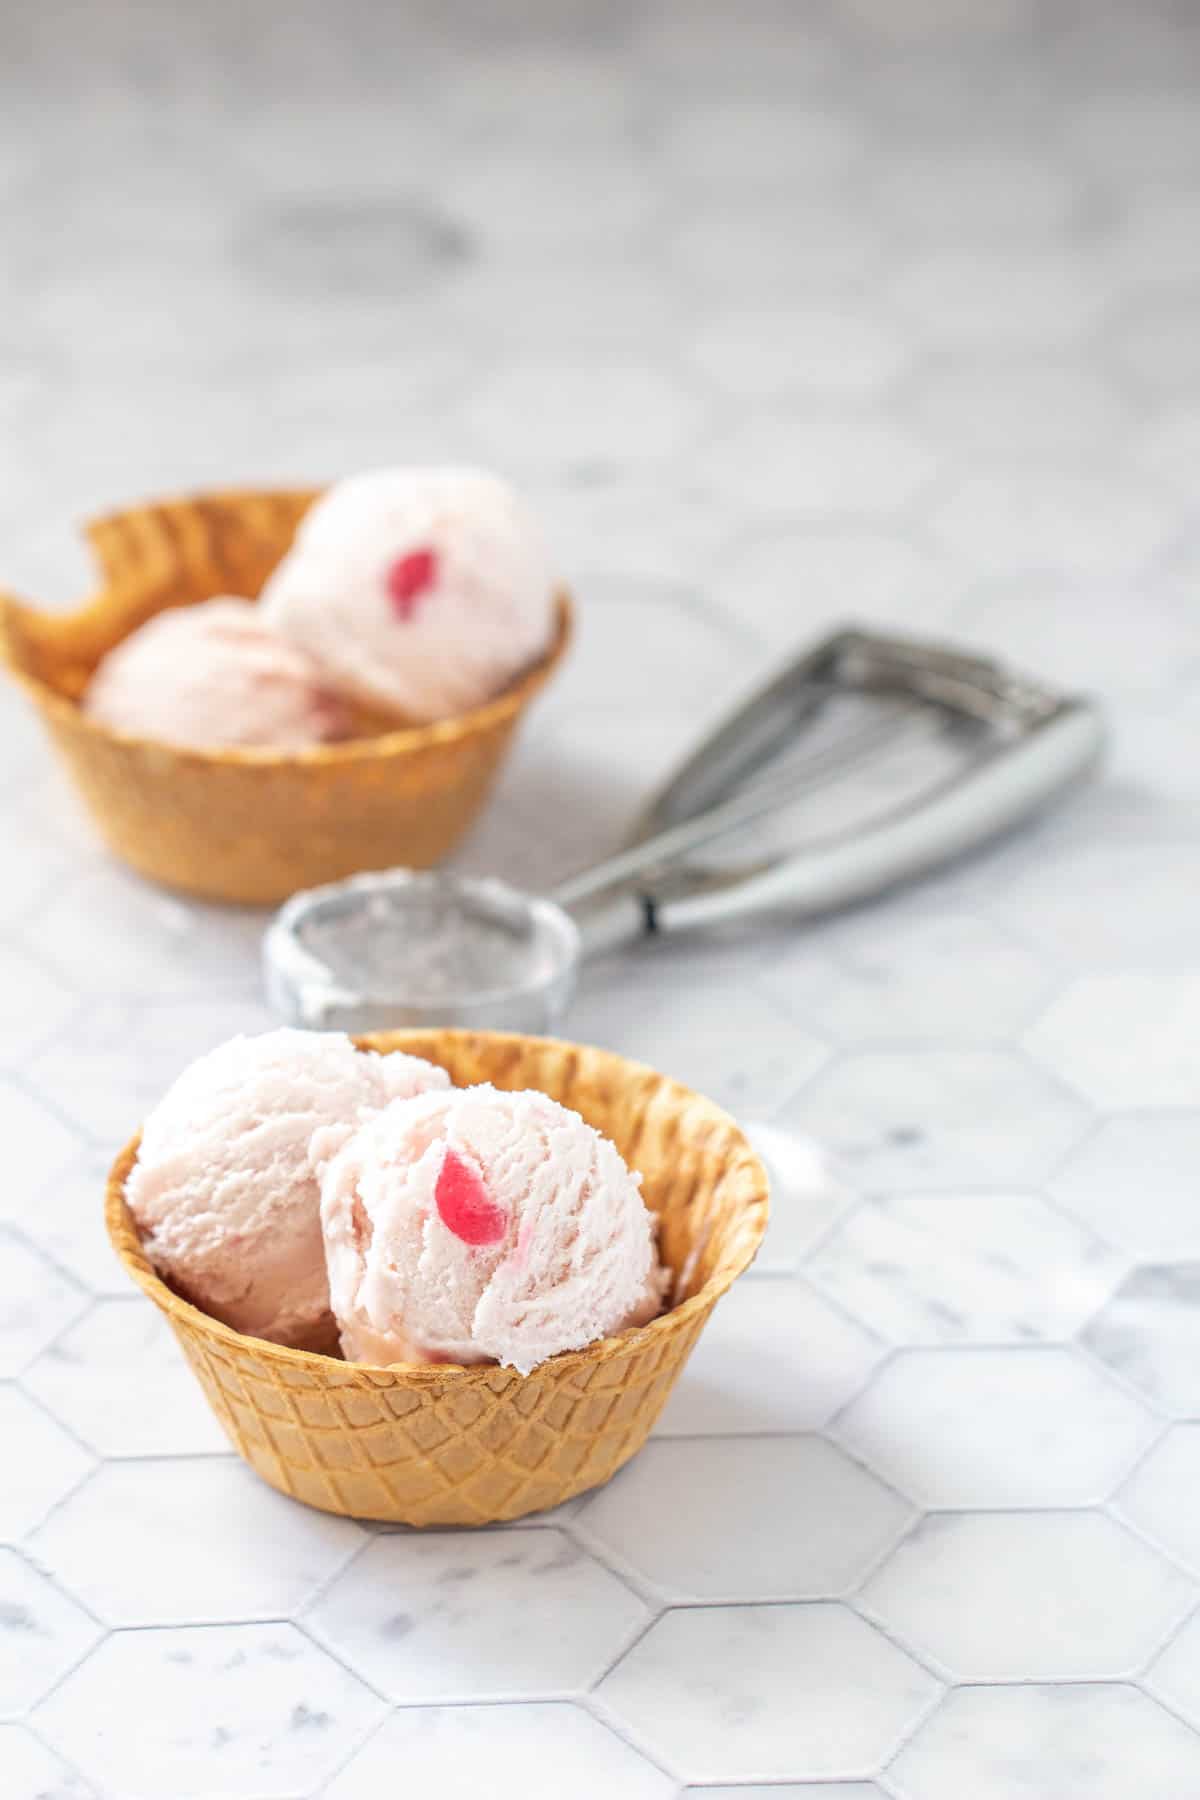 Cherry Ice Cream with Amaretto